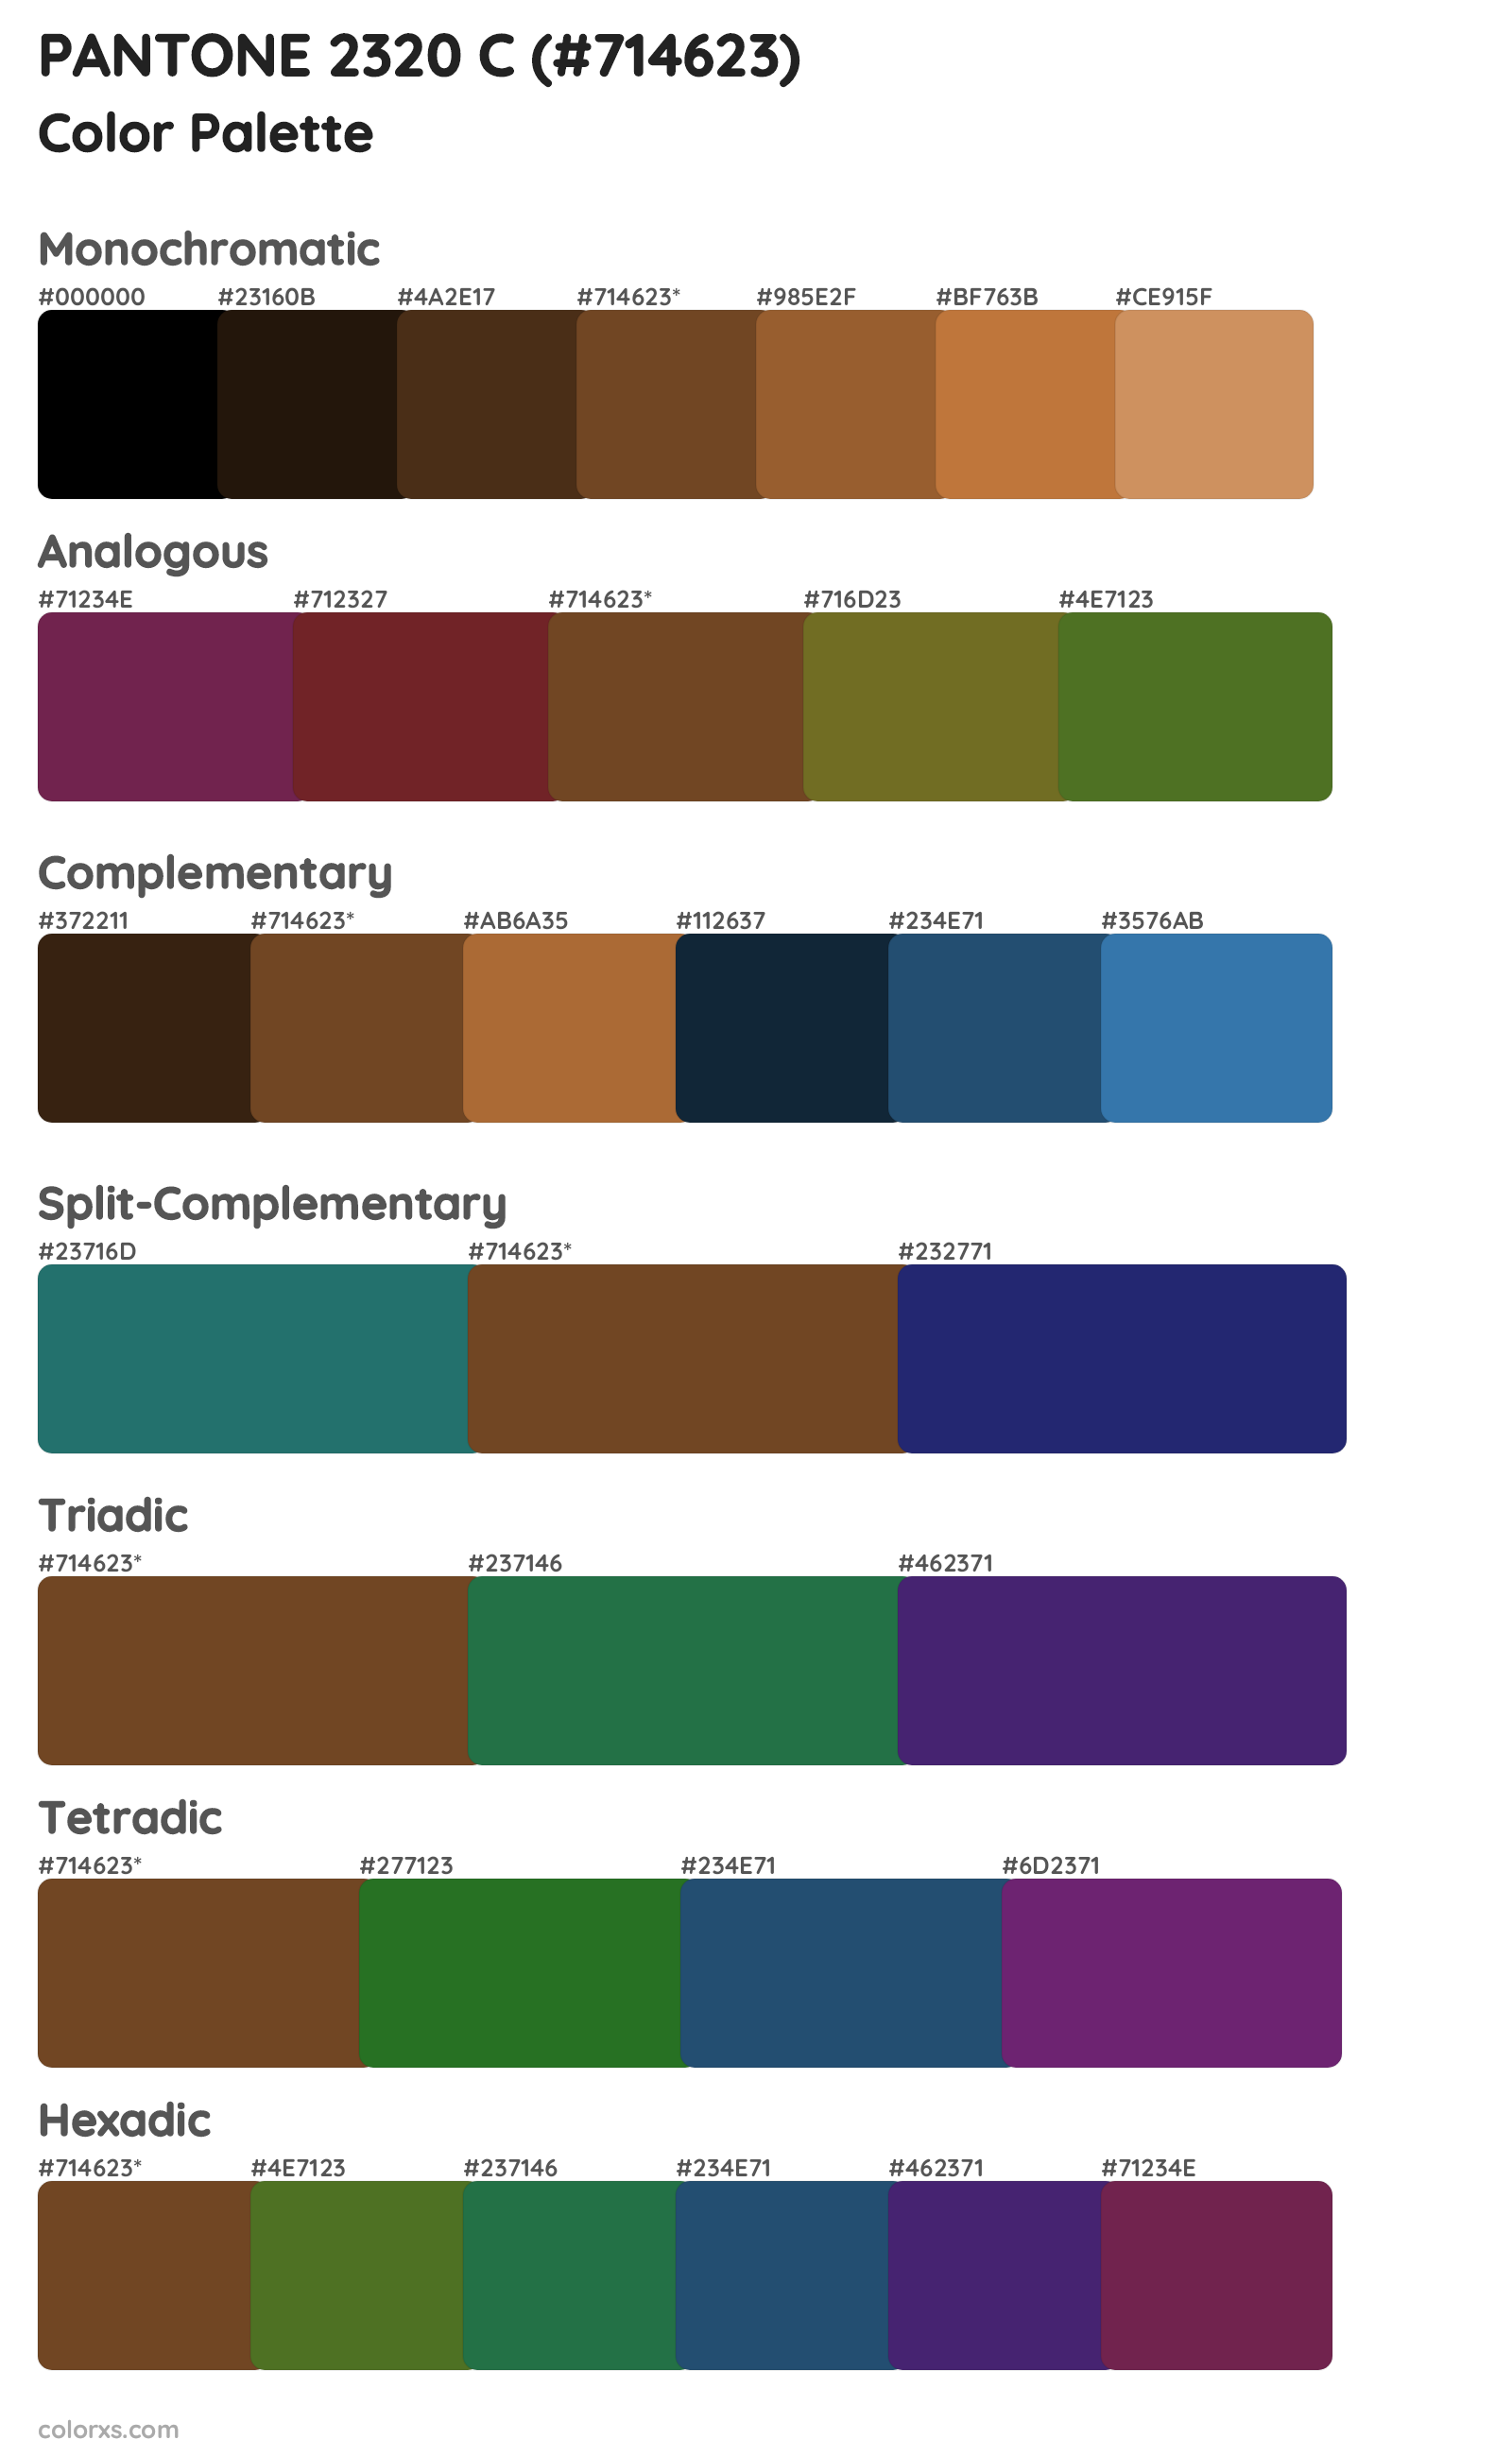 PANTONE 2320 C Color Scheme Palettes